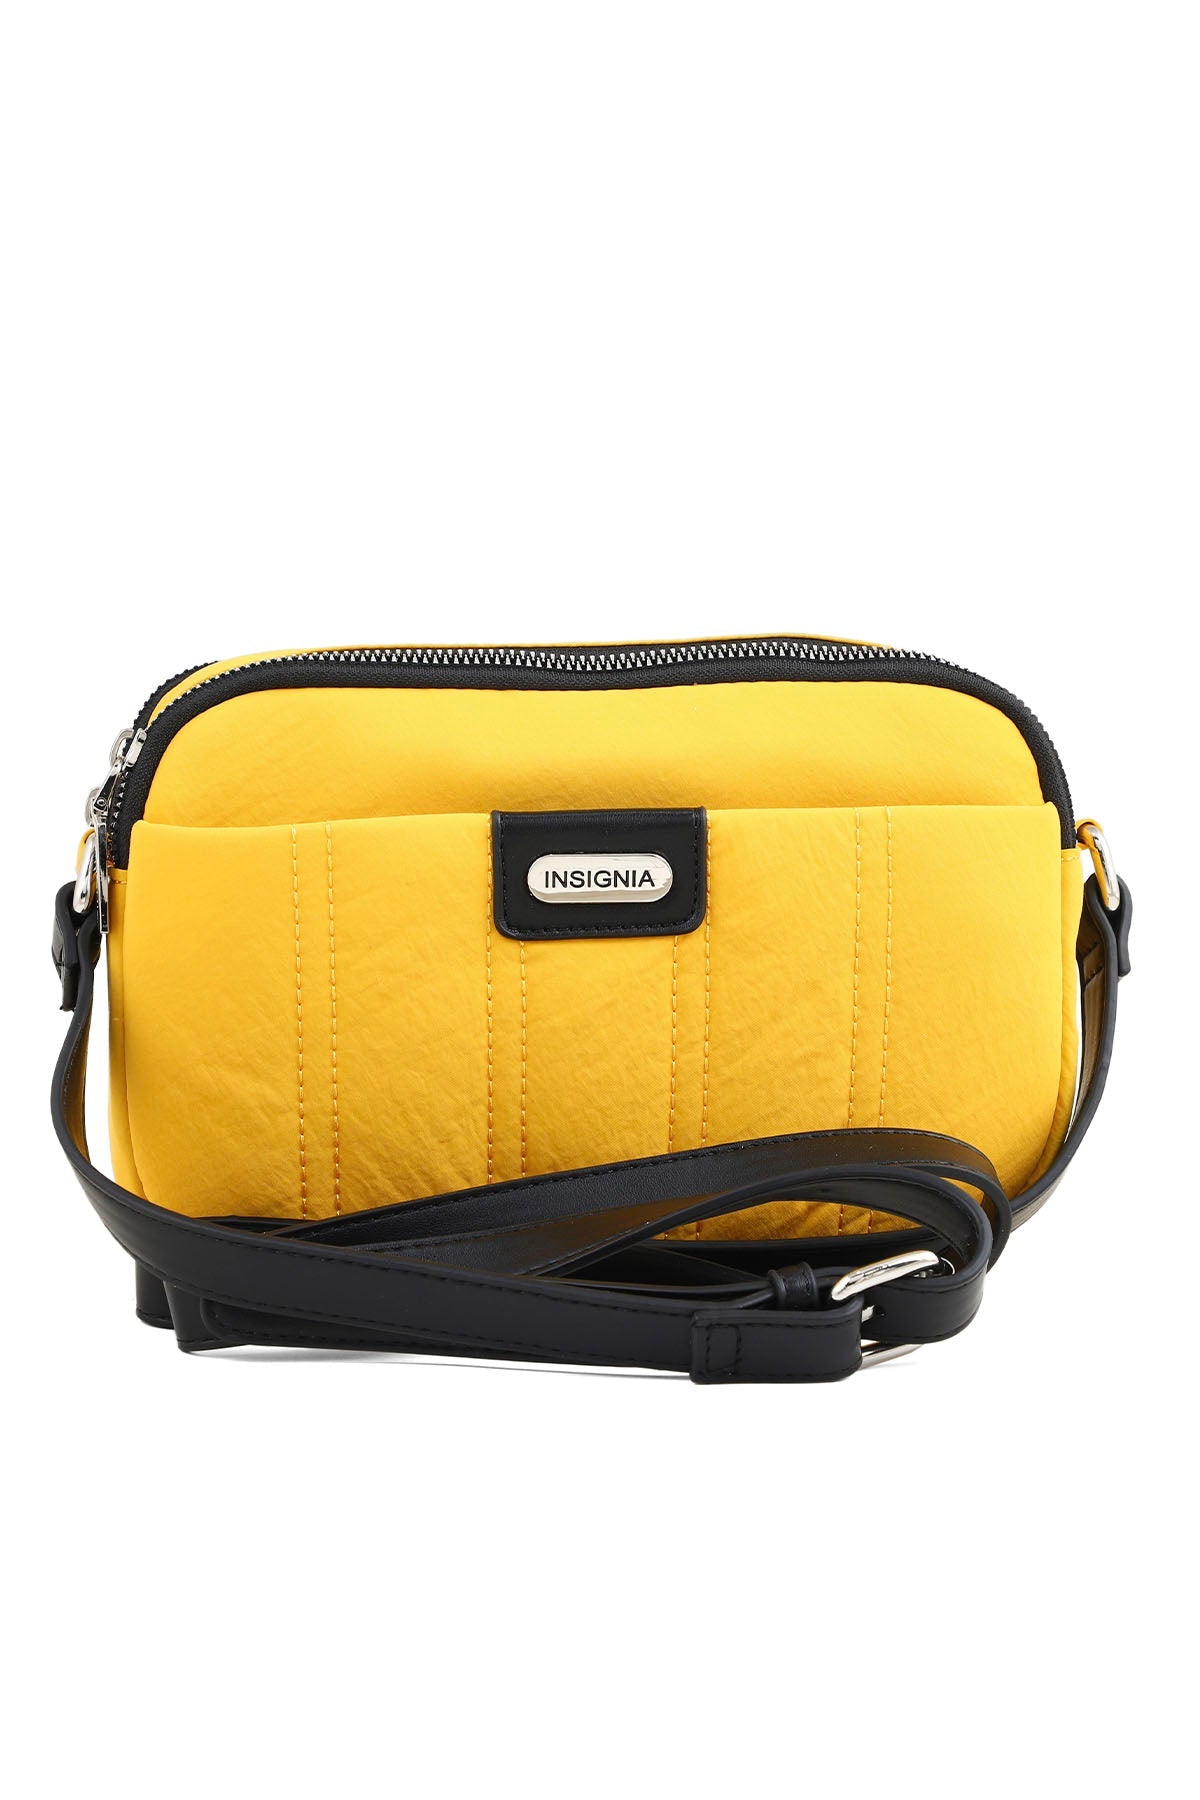 Cross Shoulder Bags B15014-Yellow